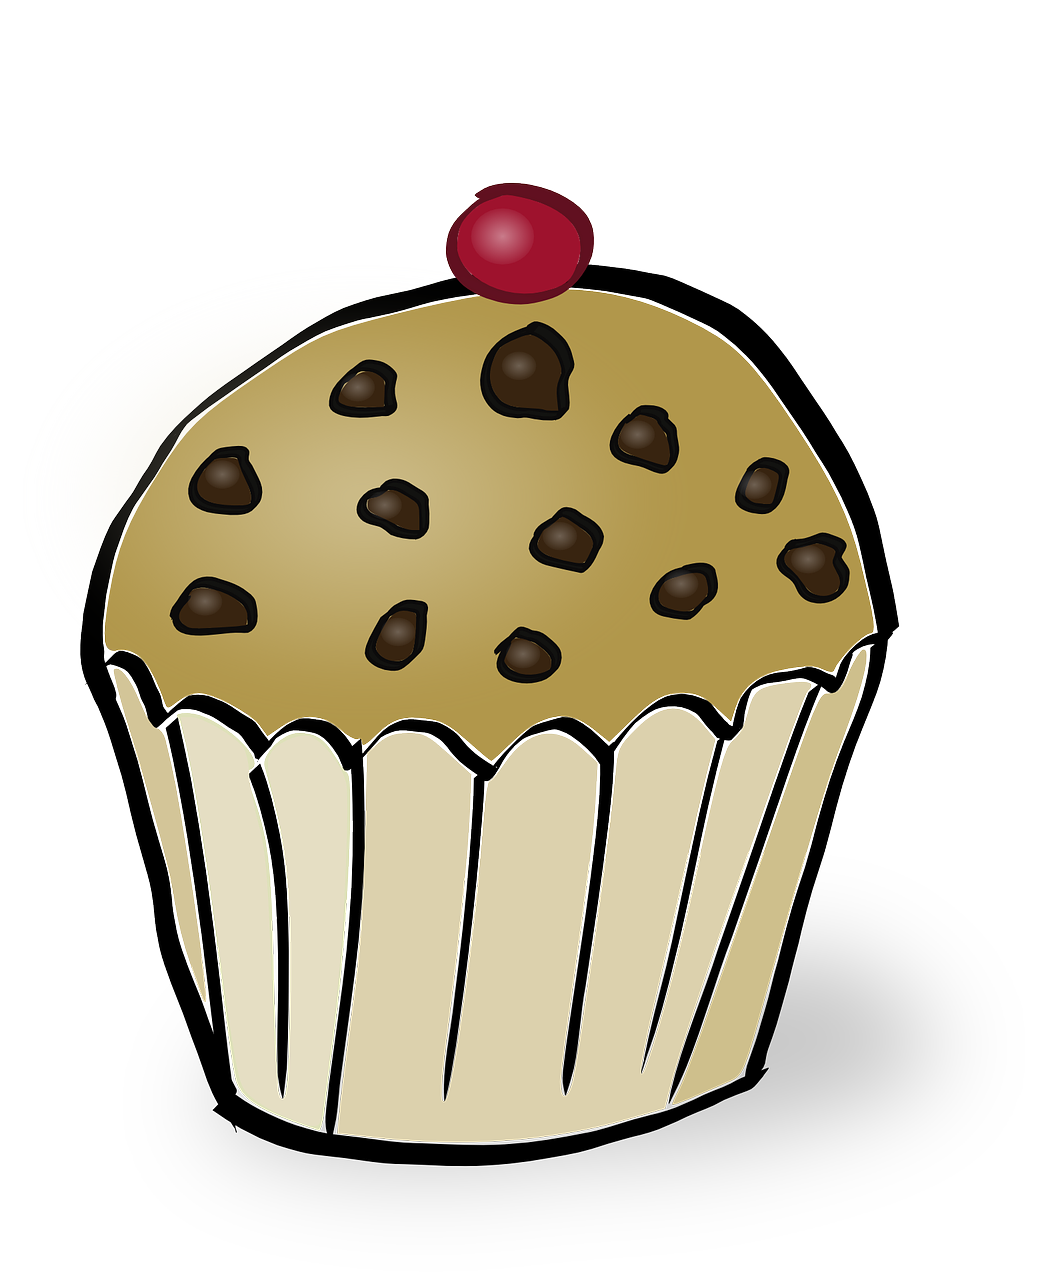 muffin cherry chocolate chip free photo